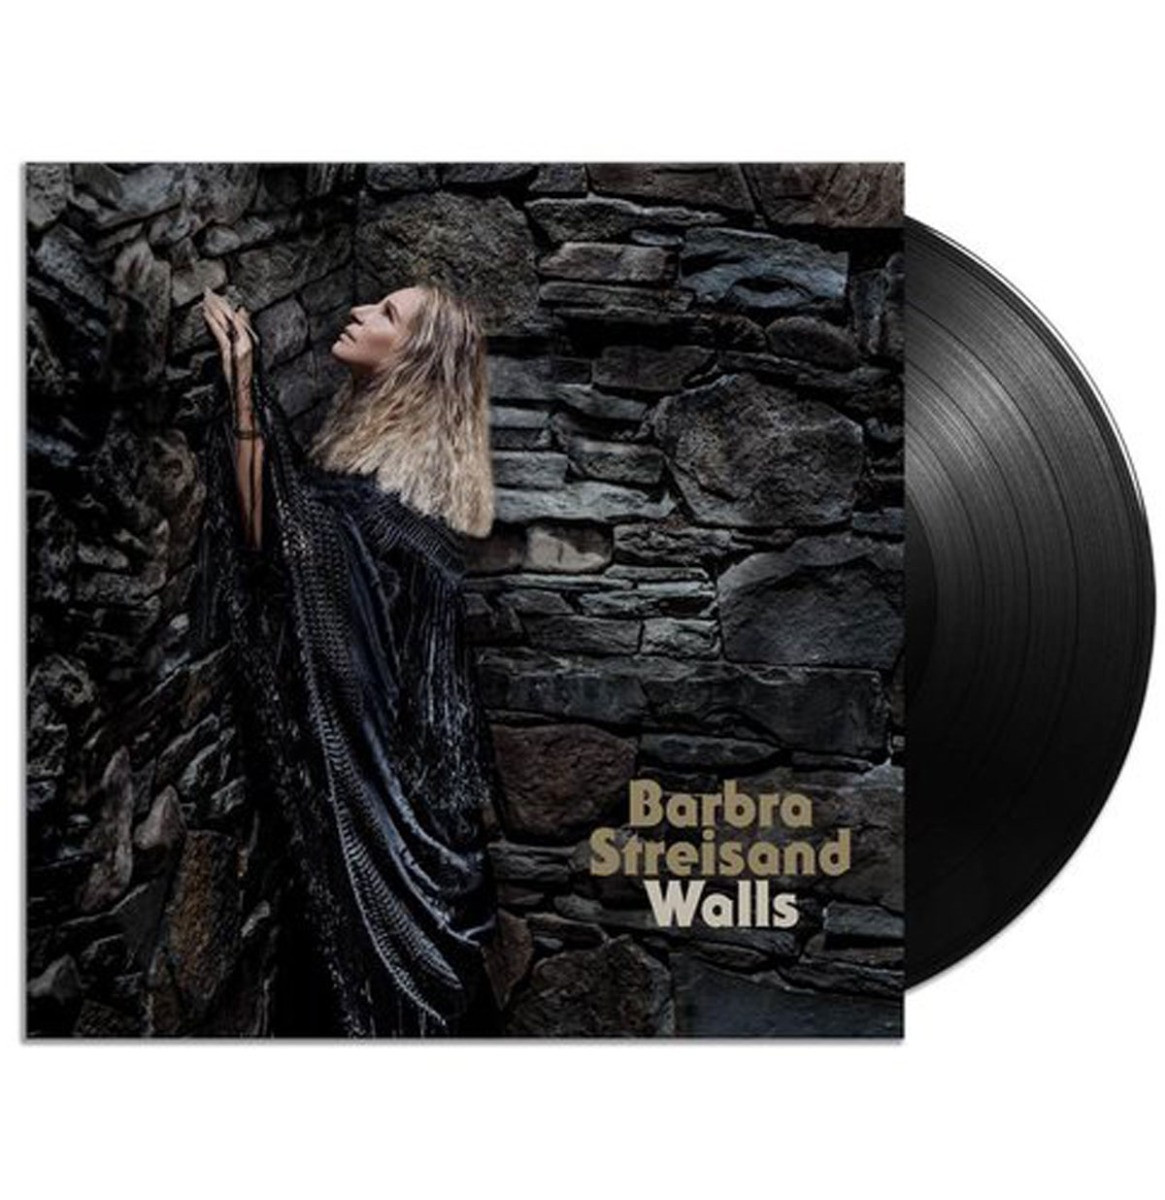 Barbra Streisand - Walls LP